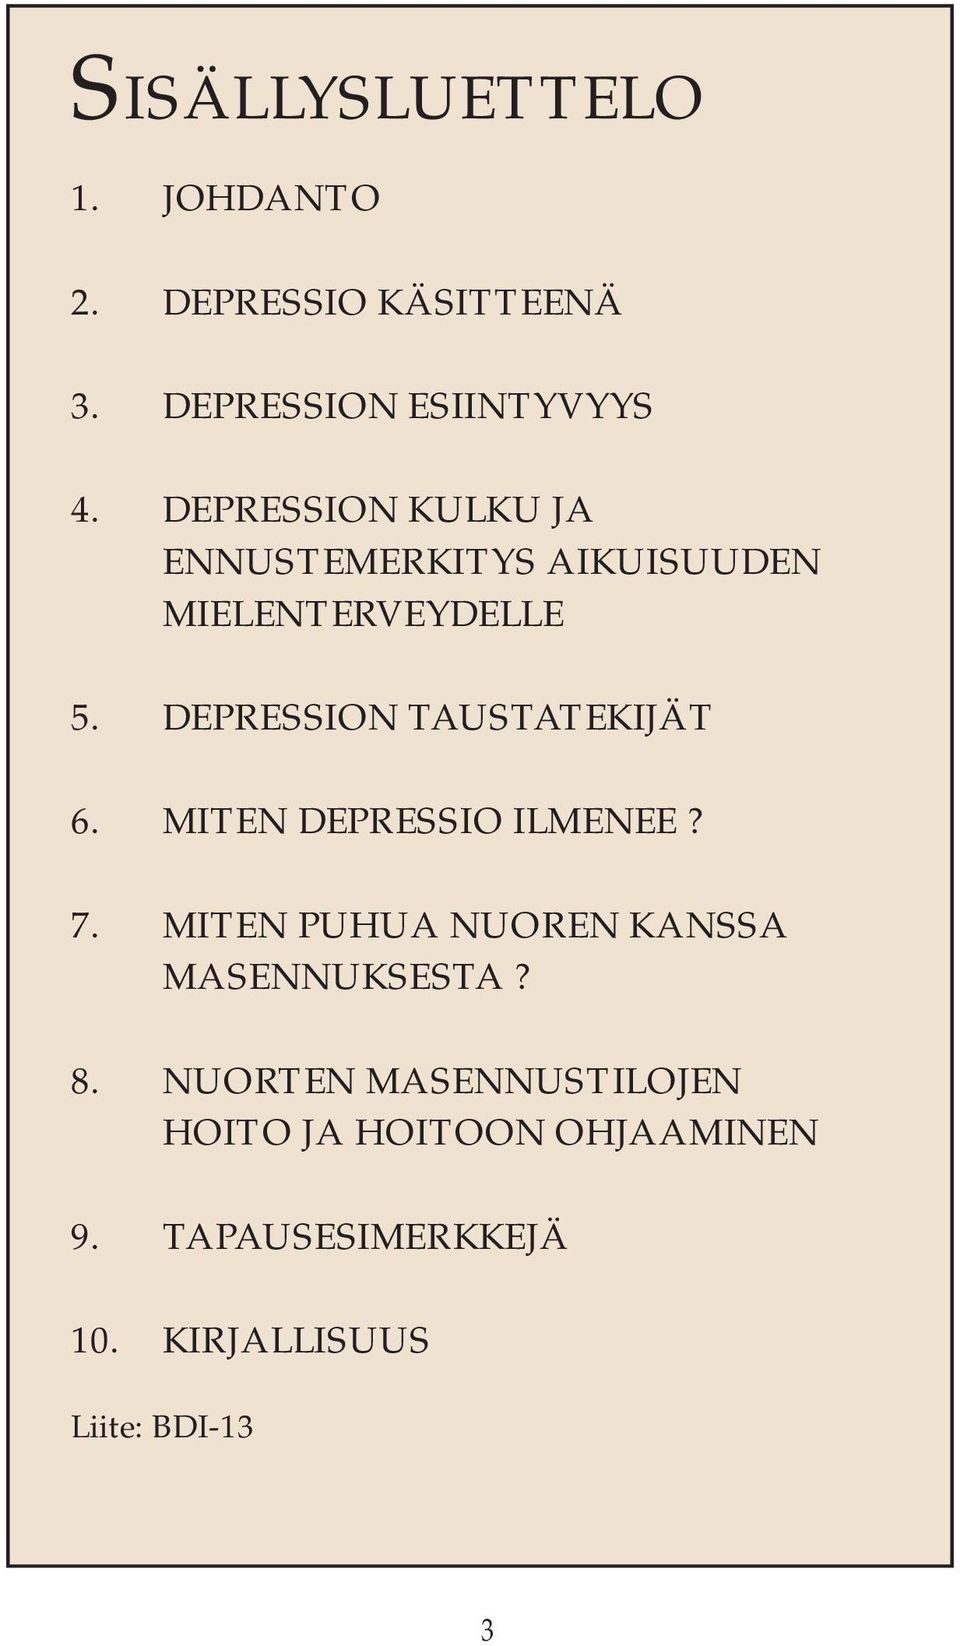 DEPRESSION TAUSTATEKIJÄT 6. MITEN DEPRESSIO ILMENEE? 7.